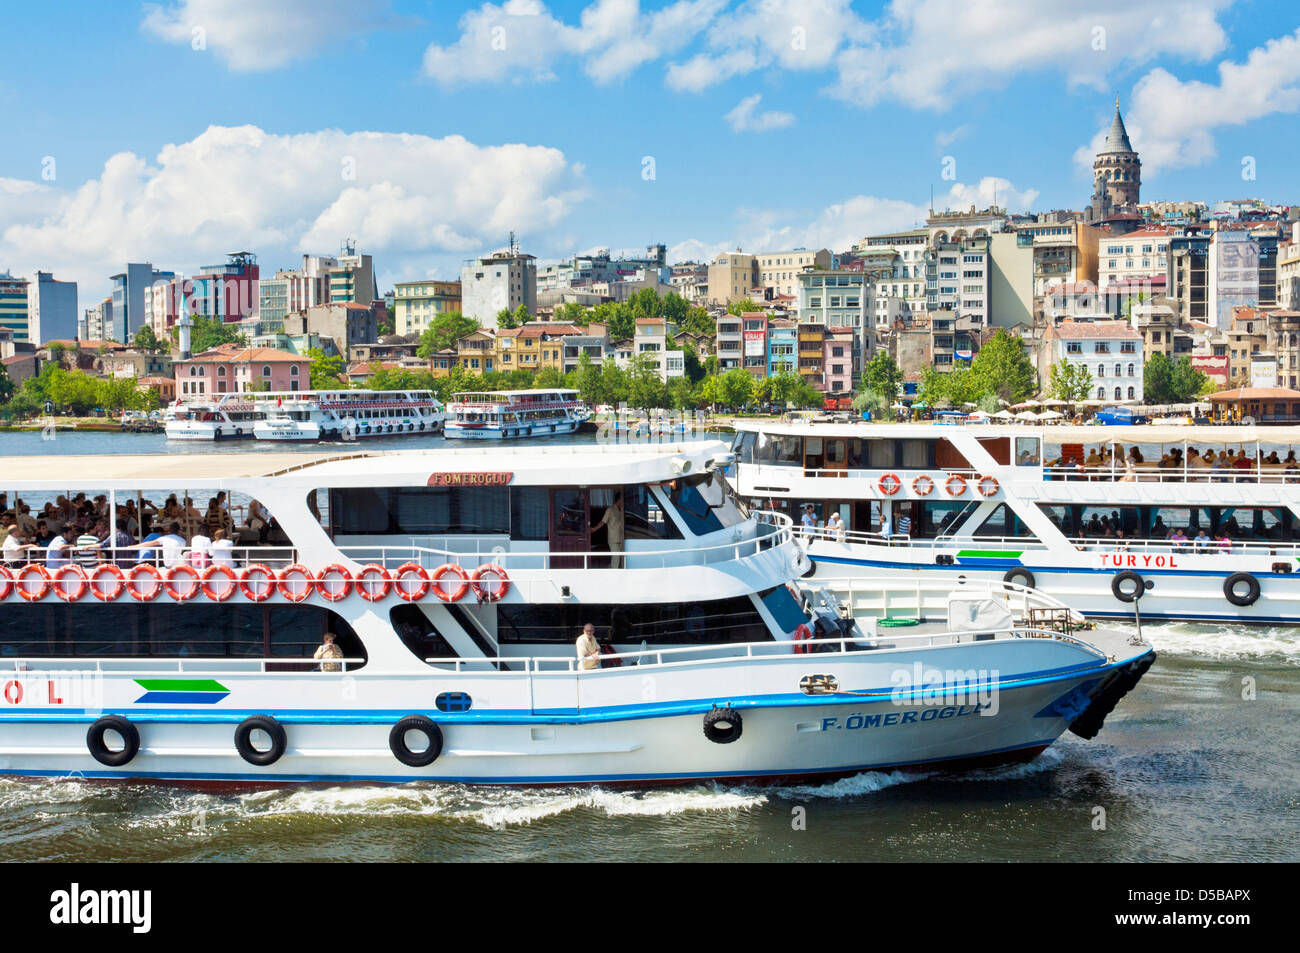 Les bateaux de croisière sur le Bosphore et la skyline de Beyoglu, Istanbul, Turquie, Europe Banque D'Images